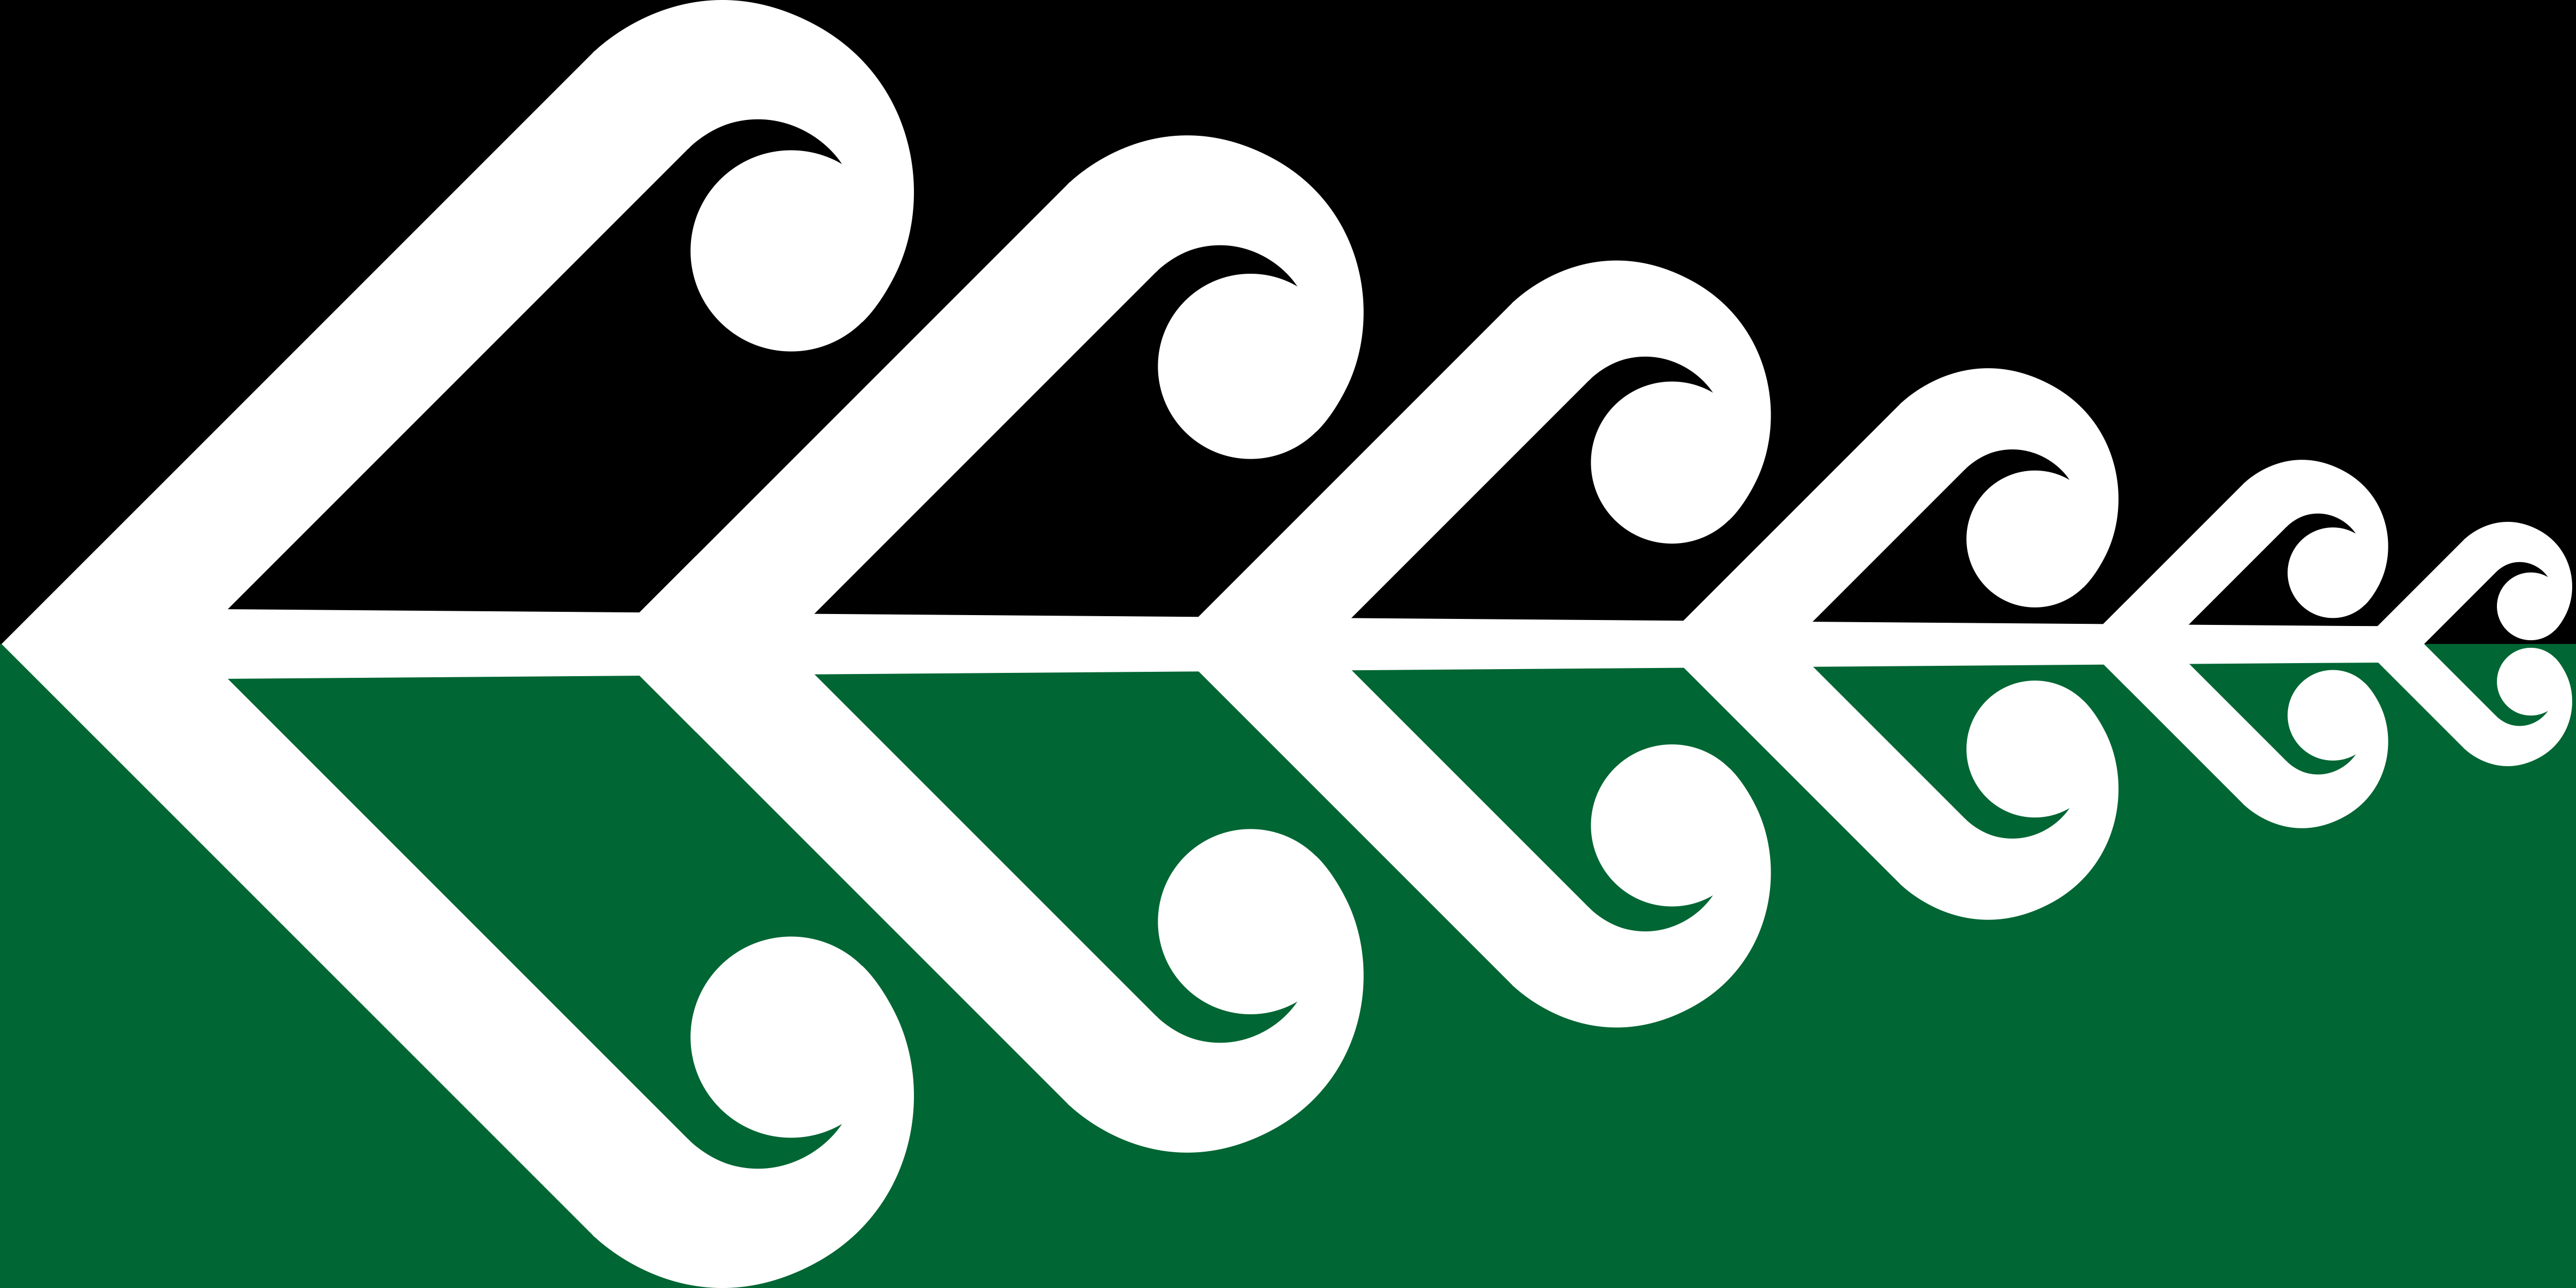 File:Koru Fern NZ Flag.jpg - Wikimedia Commons